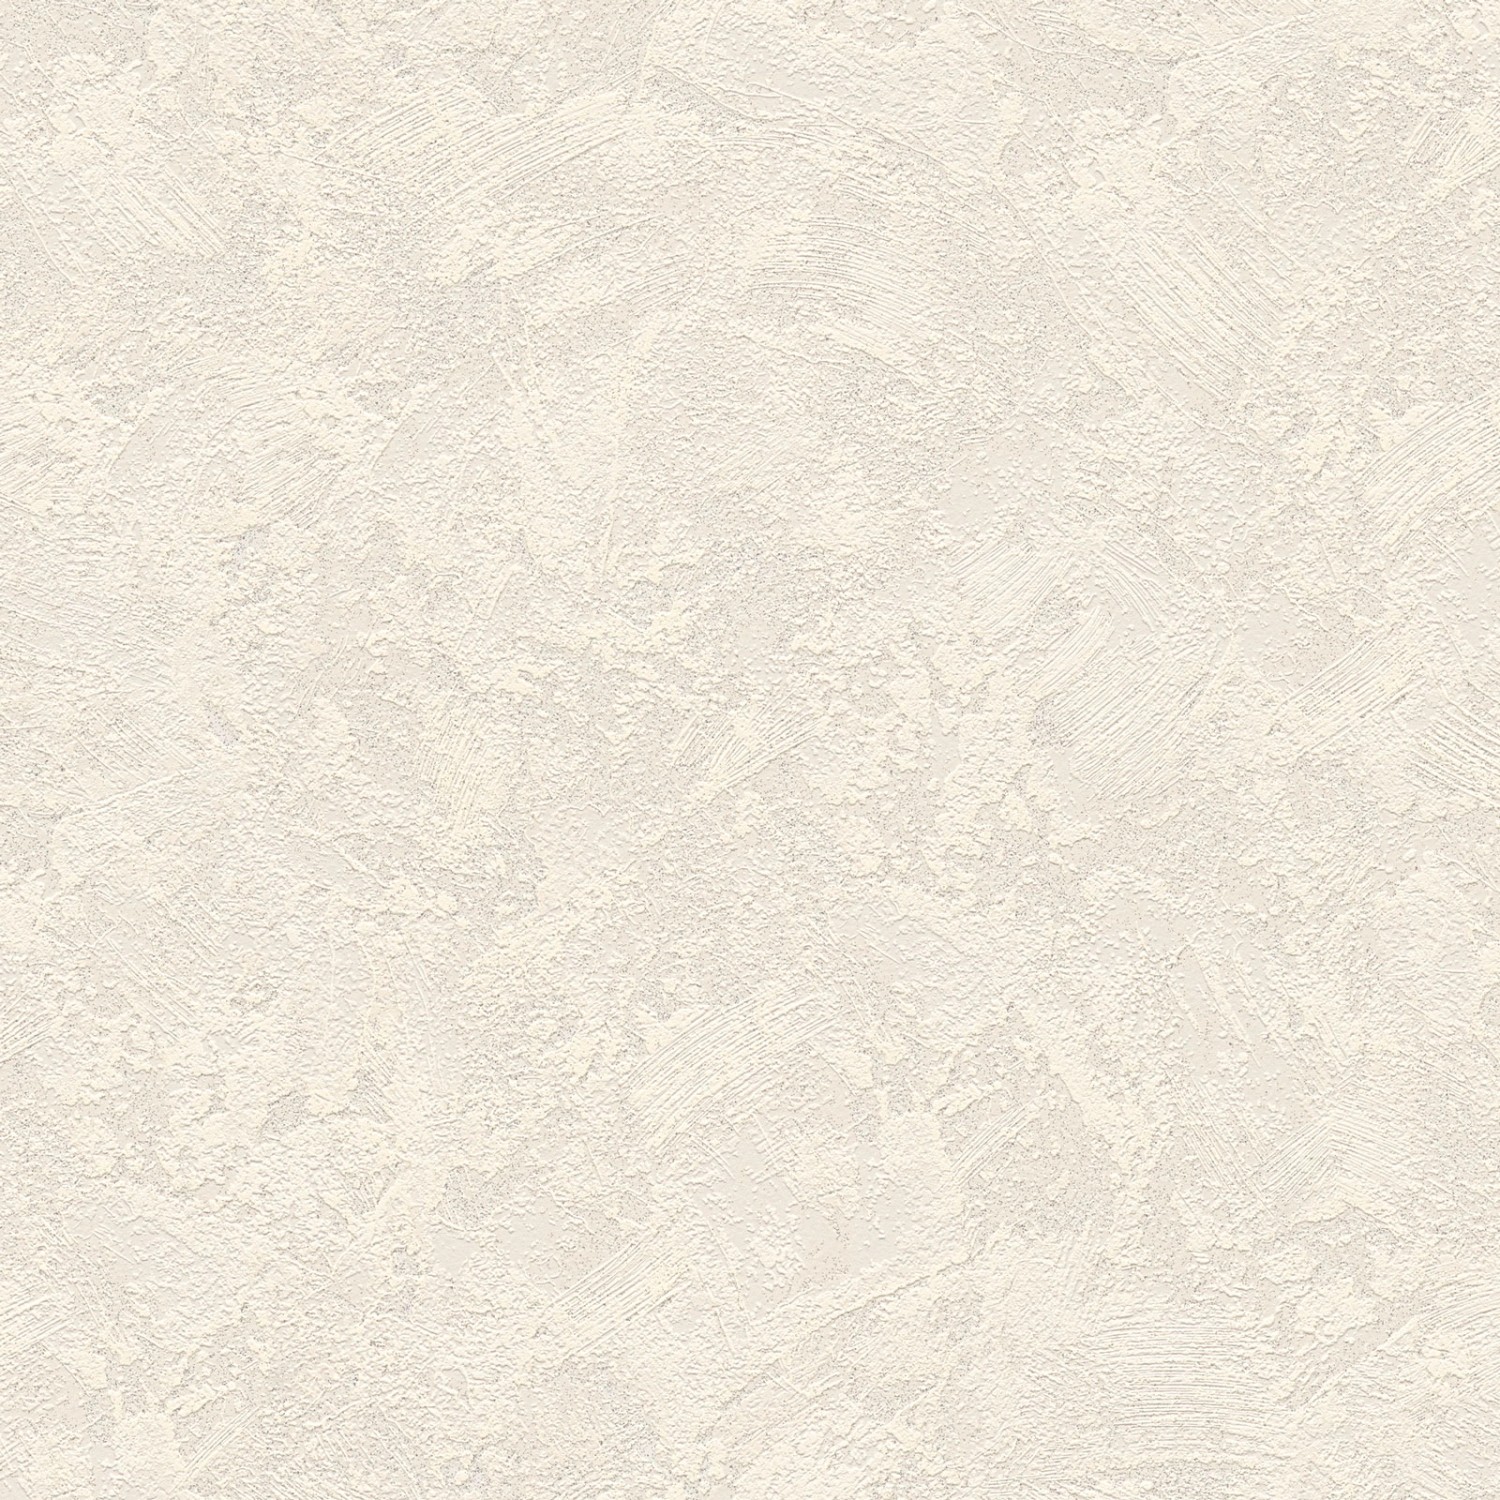 Bricoflor Putz Tapete in Creme Weiß Flur und Büro Vliestapete Einfarbig mit Vinyl Abwaschbar Uni Wandtapete Schlicht Ide